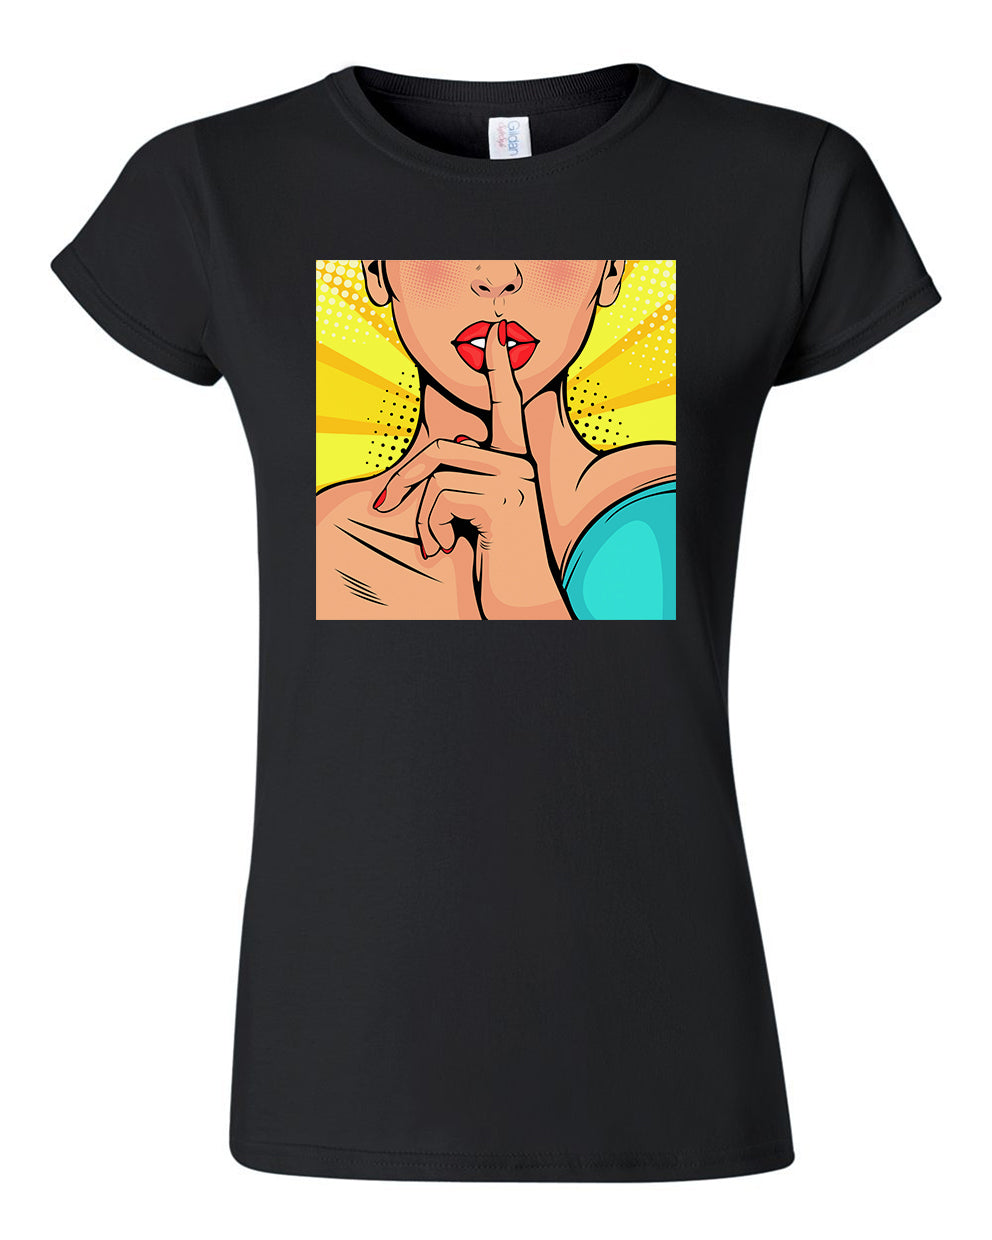 Retro Silence Ladies T-shirt